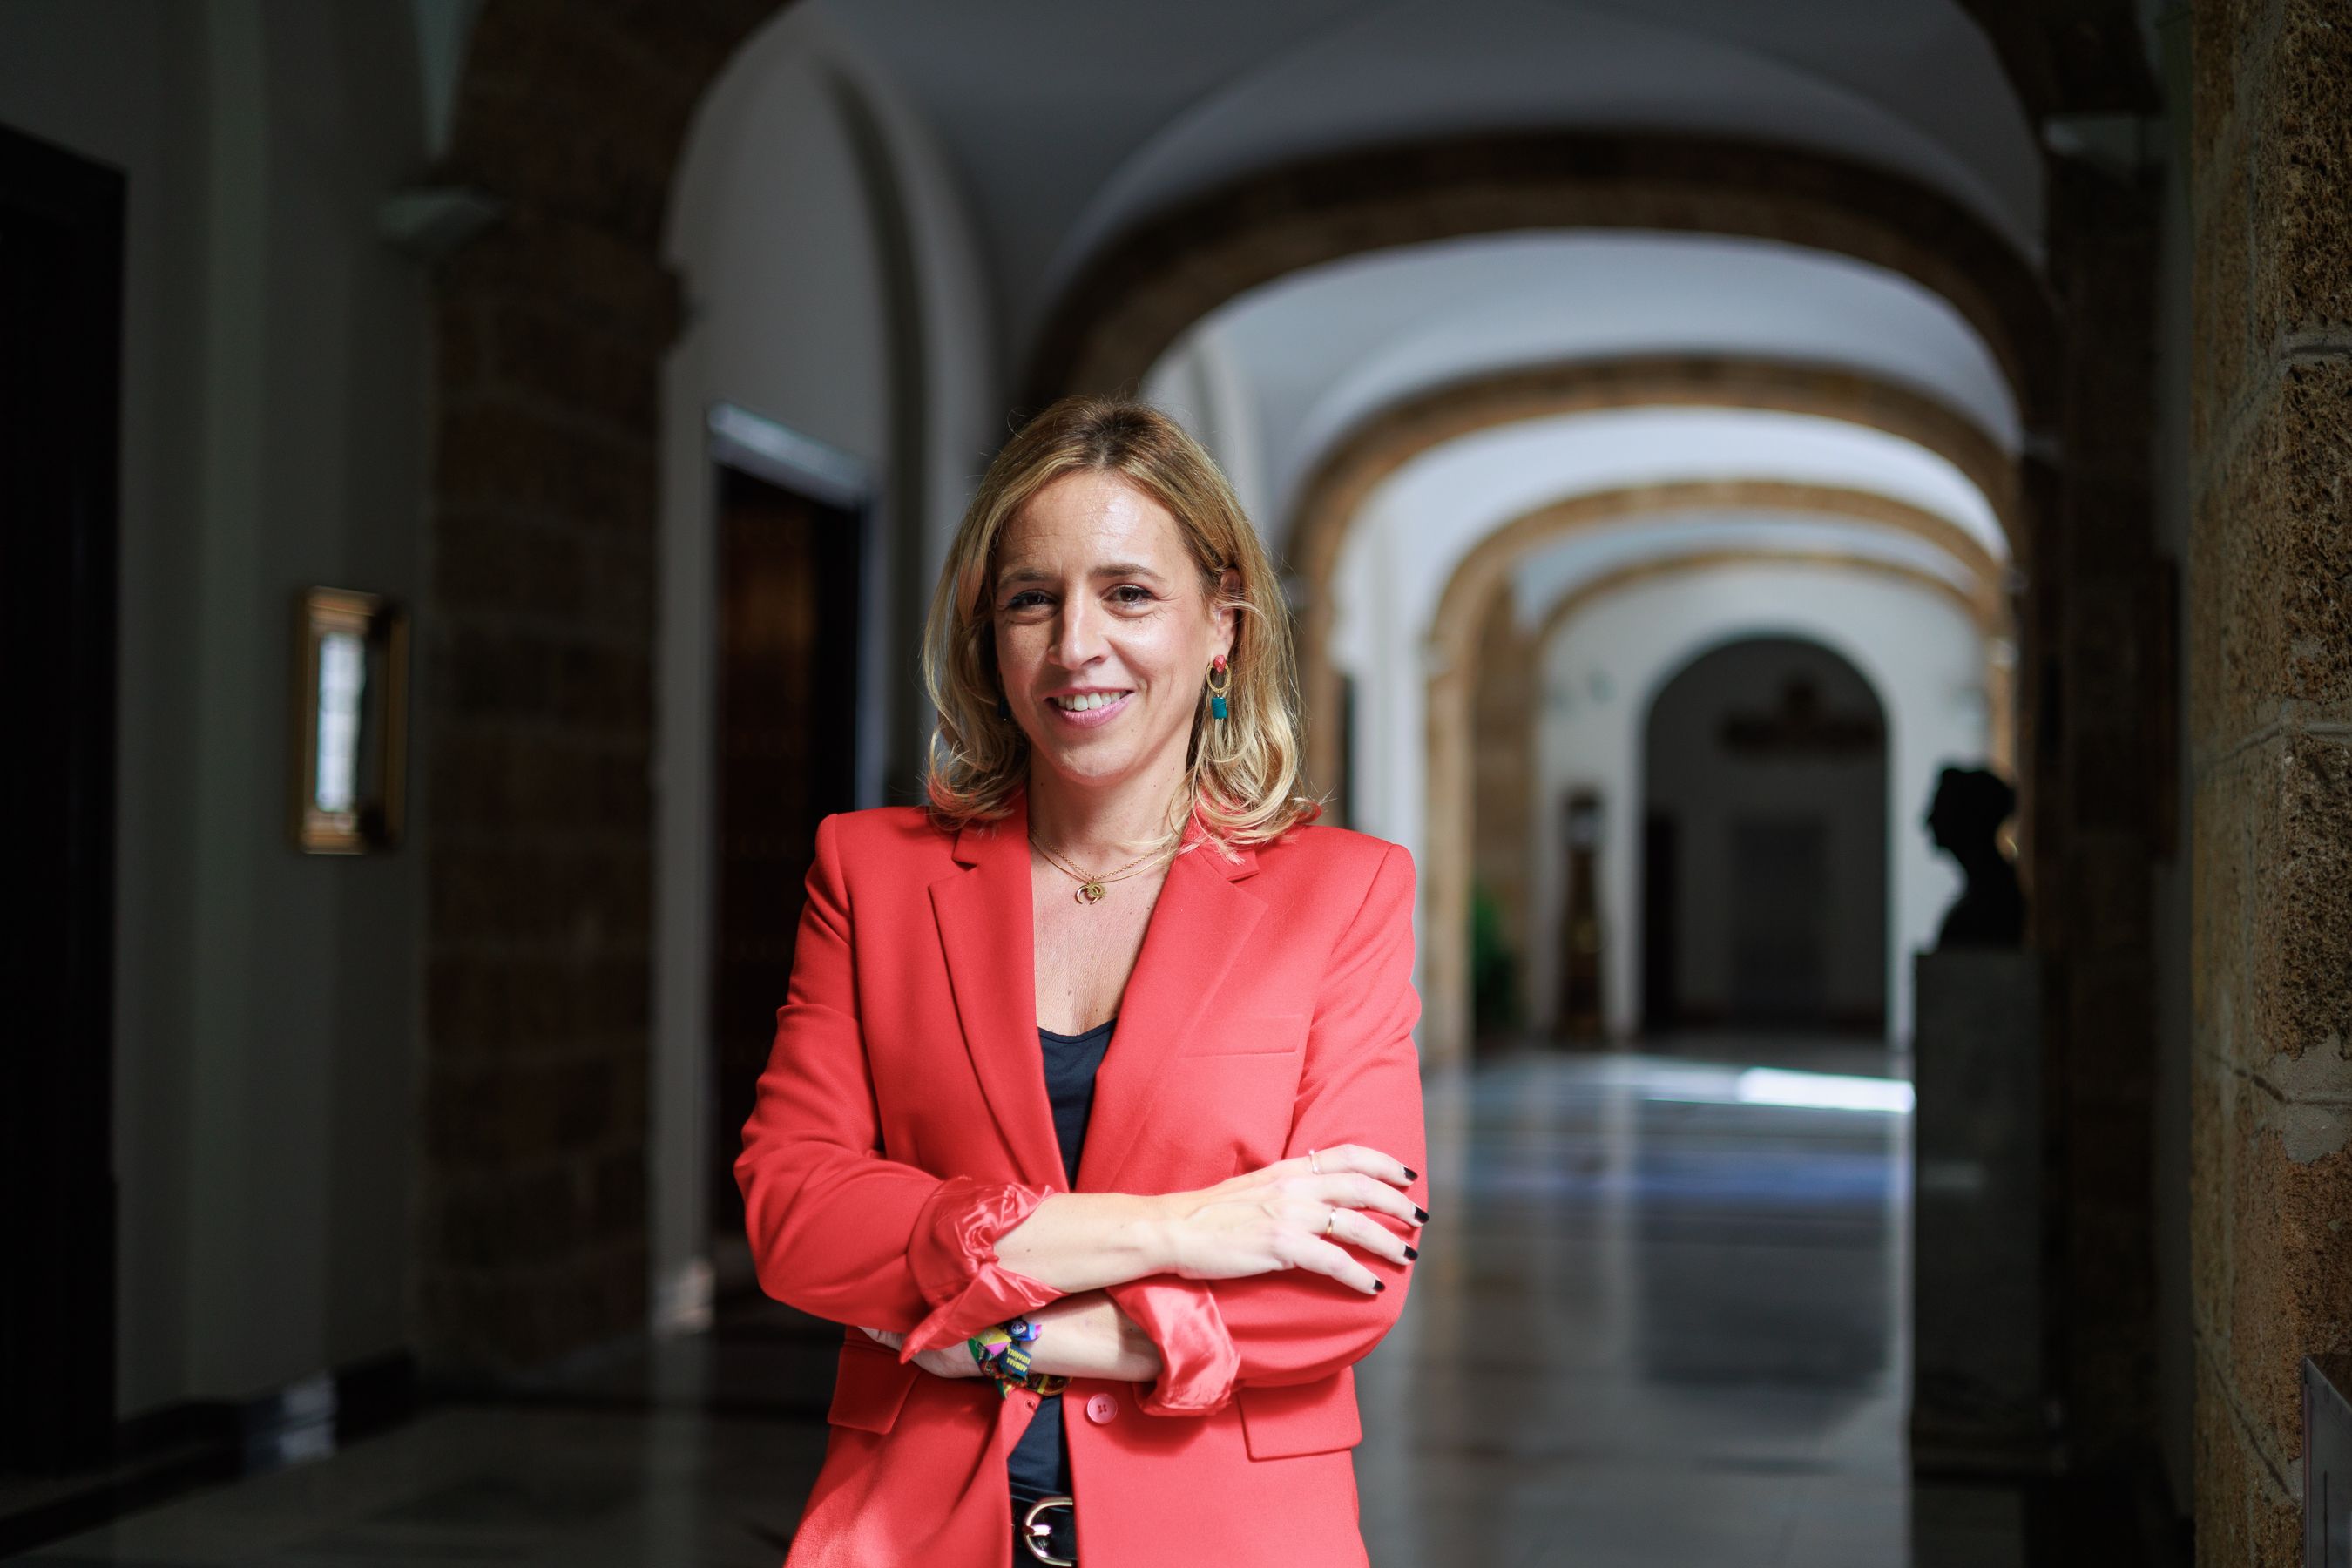 Almudena Martínez, presidenta de Diputación de Cádiz, en los pasillos del Palacio Provincial, tras una entrevista concedida a lavozdelsur.es esta semana.